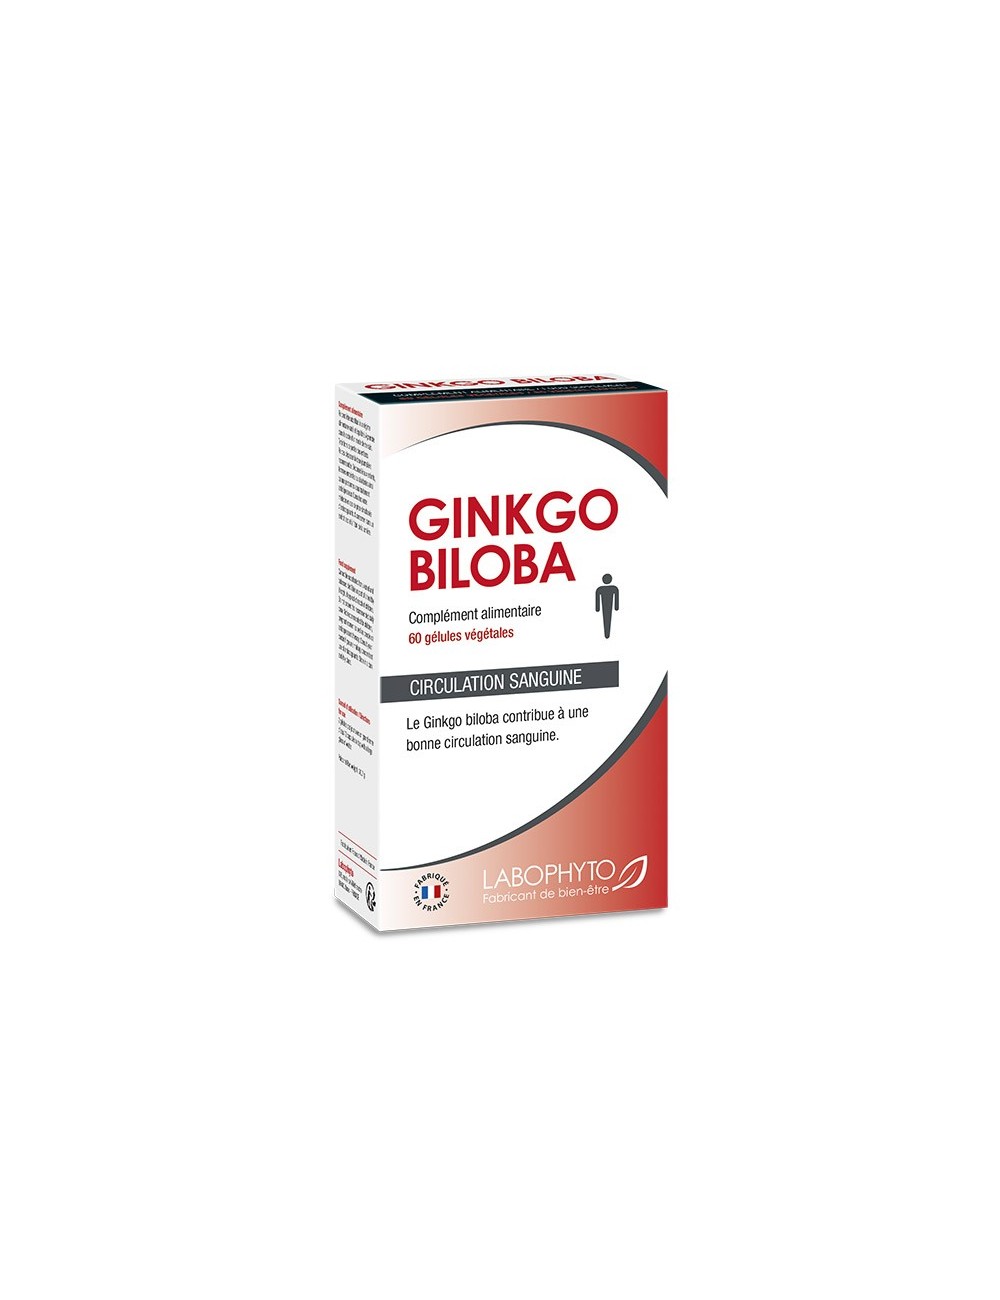 Ginkgo Biloba 60 gélules extrait végétal pour l'amélioration mental - Aphrodisiaques - Labophyto